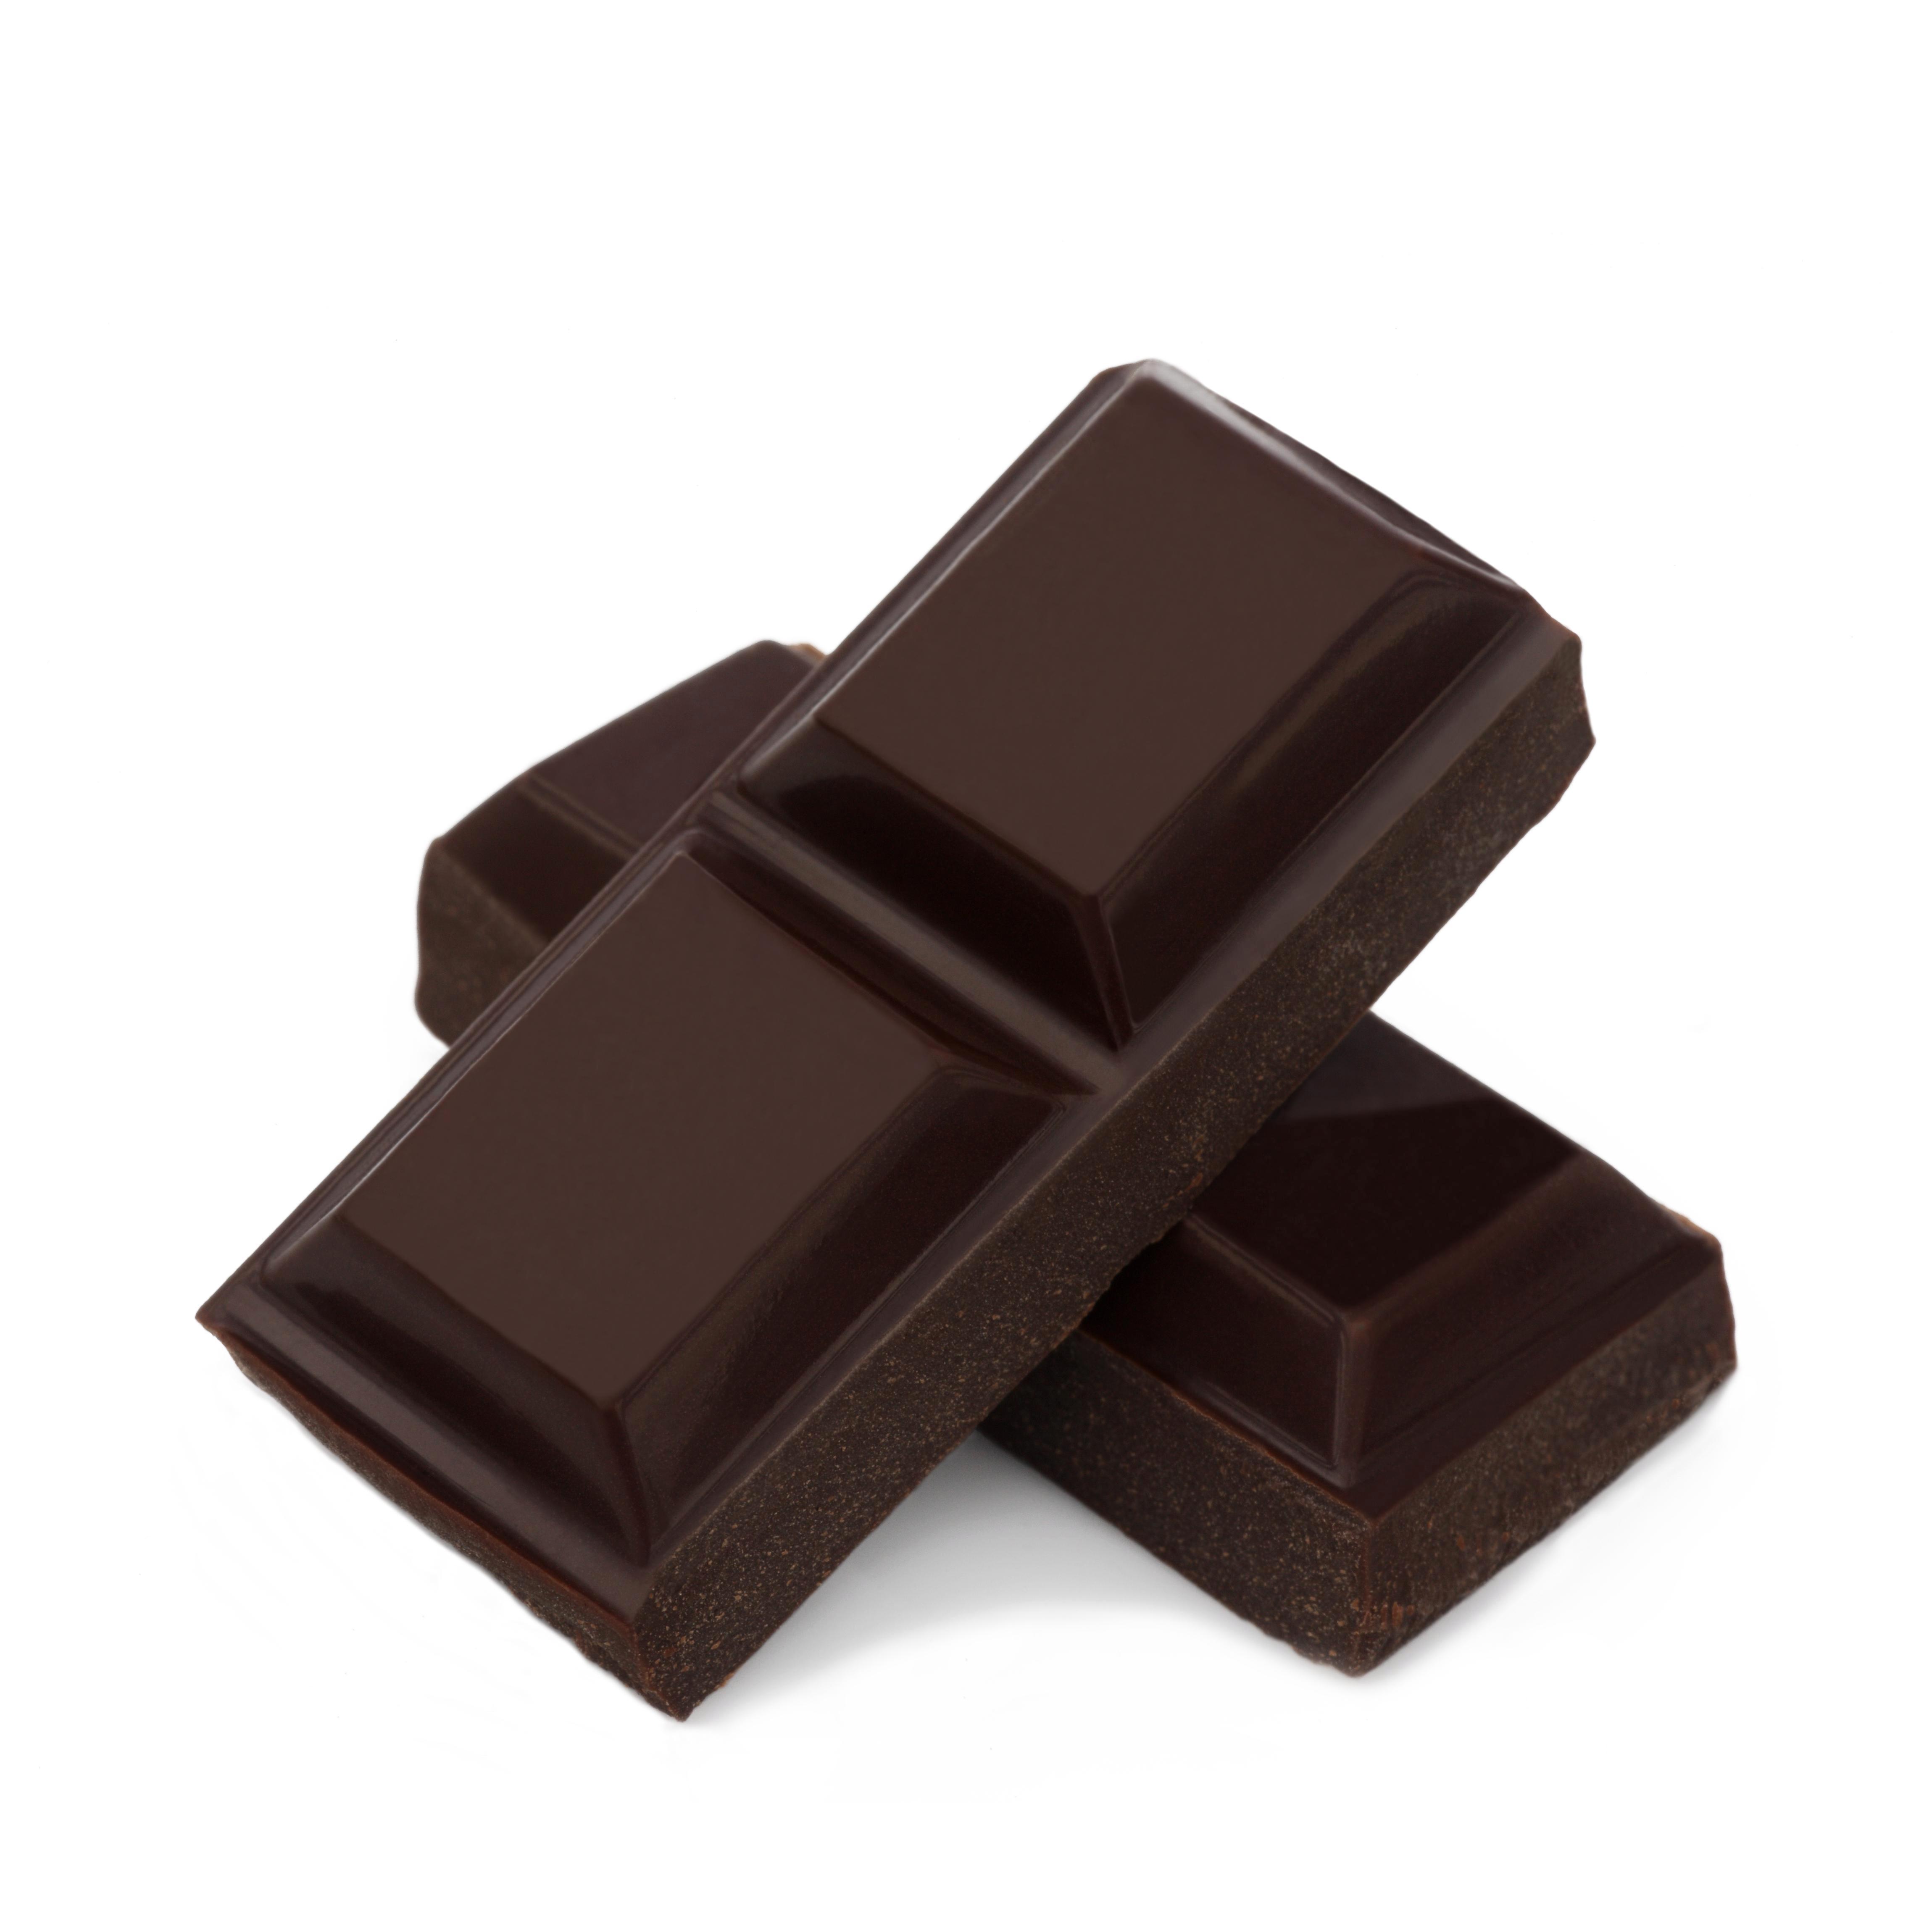  Cokelat hitam dianggap sebagai alternatif yang lebih sehat untuk susu atau cokelat putih